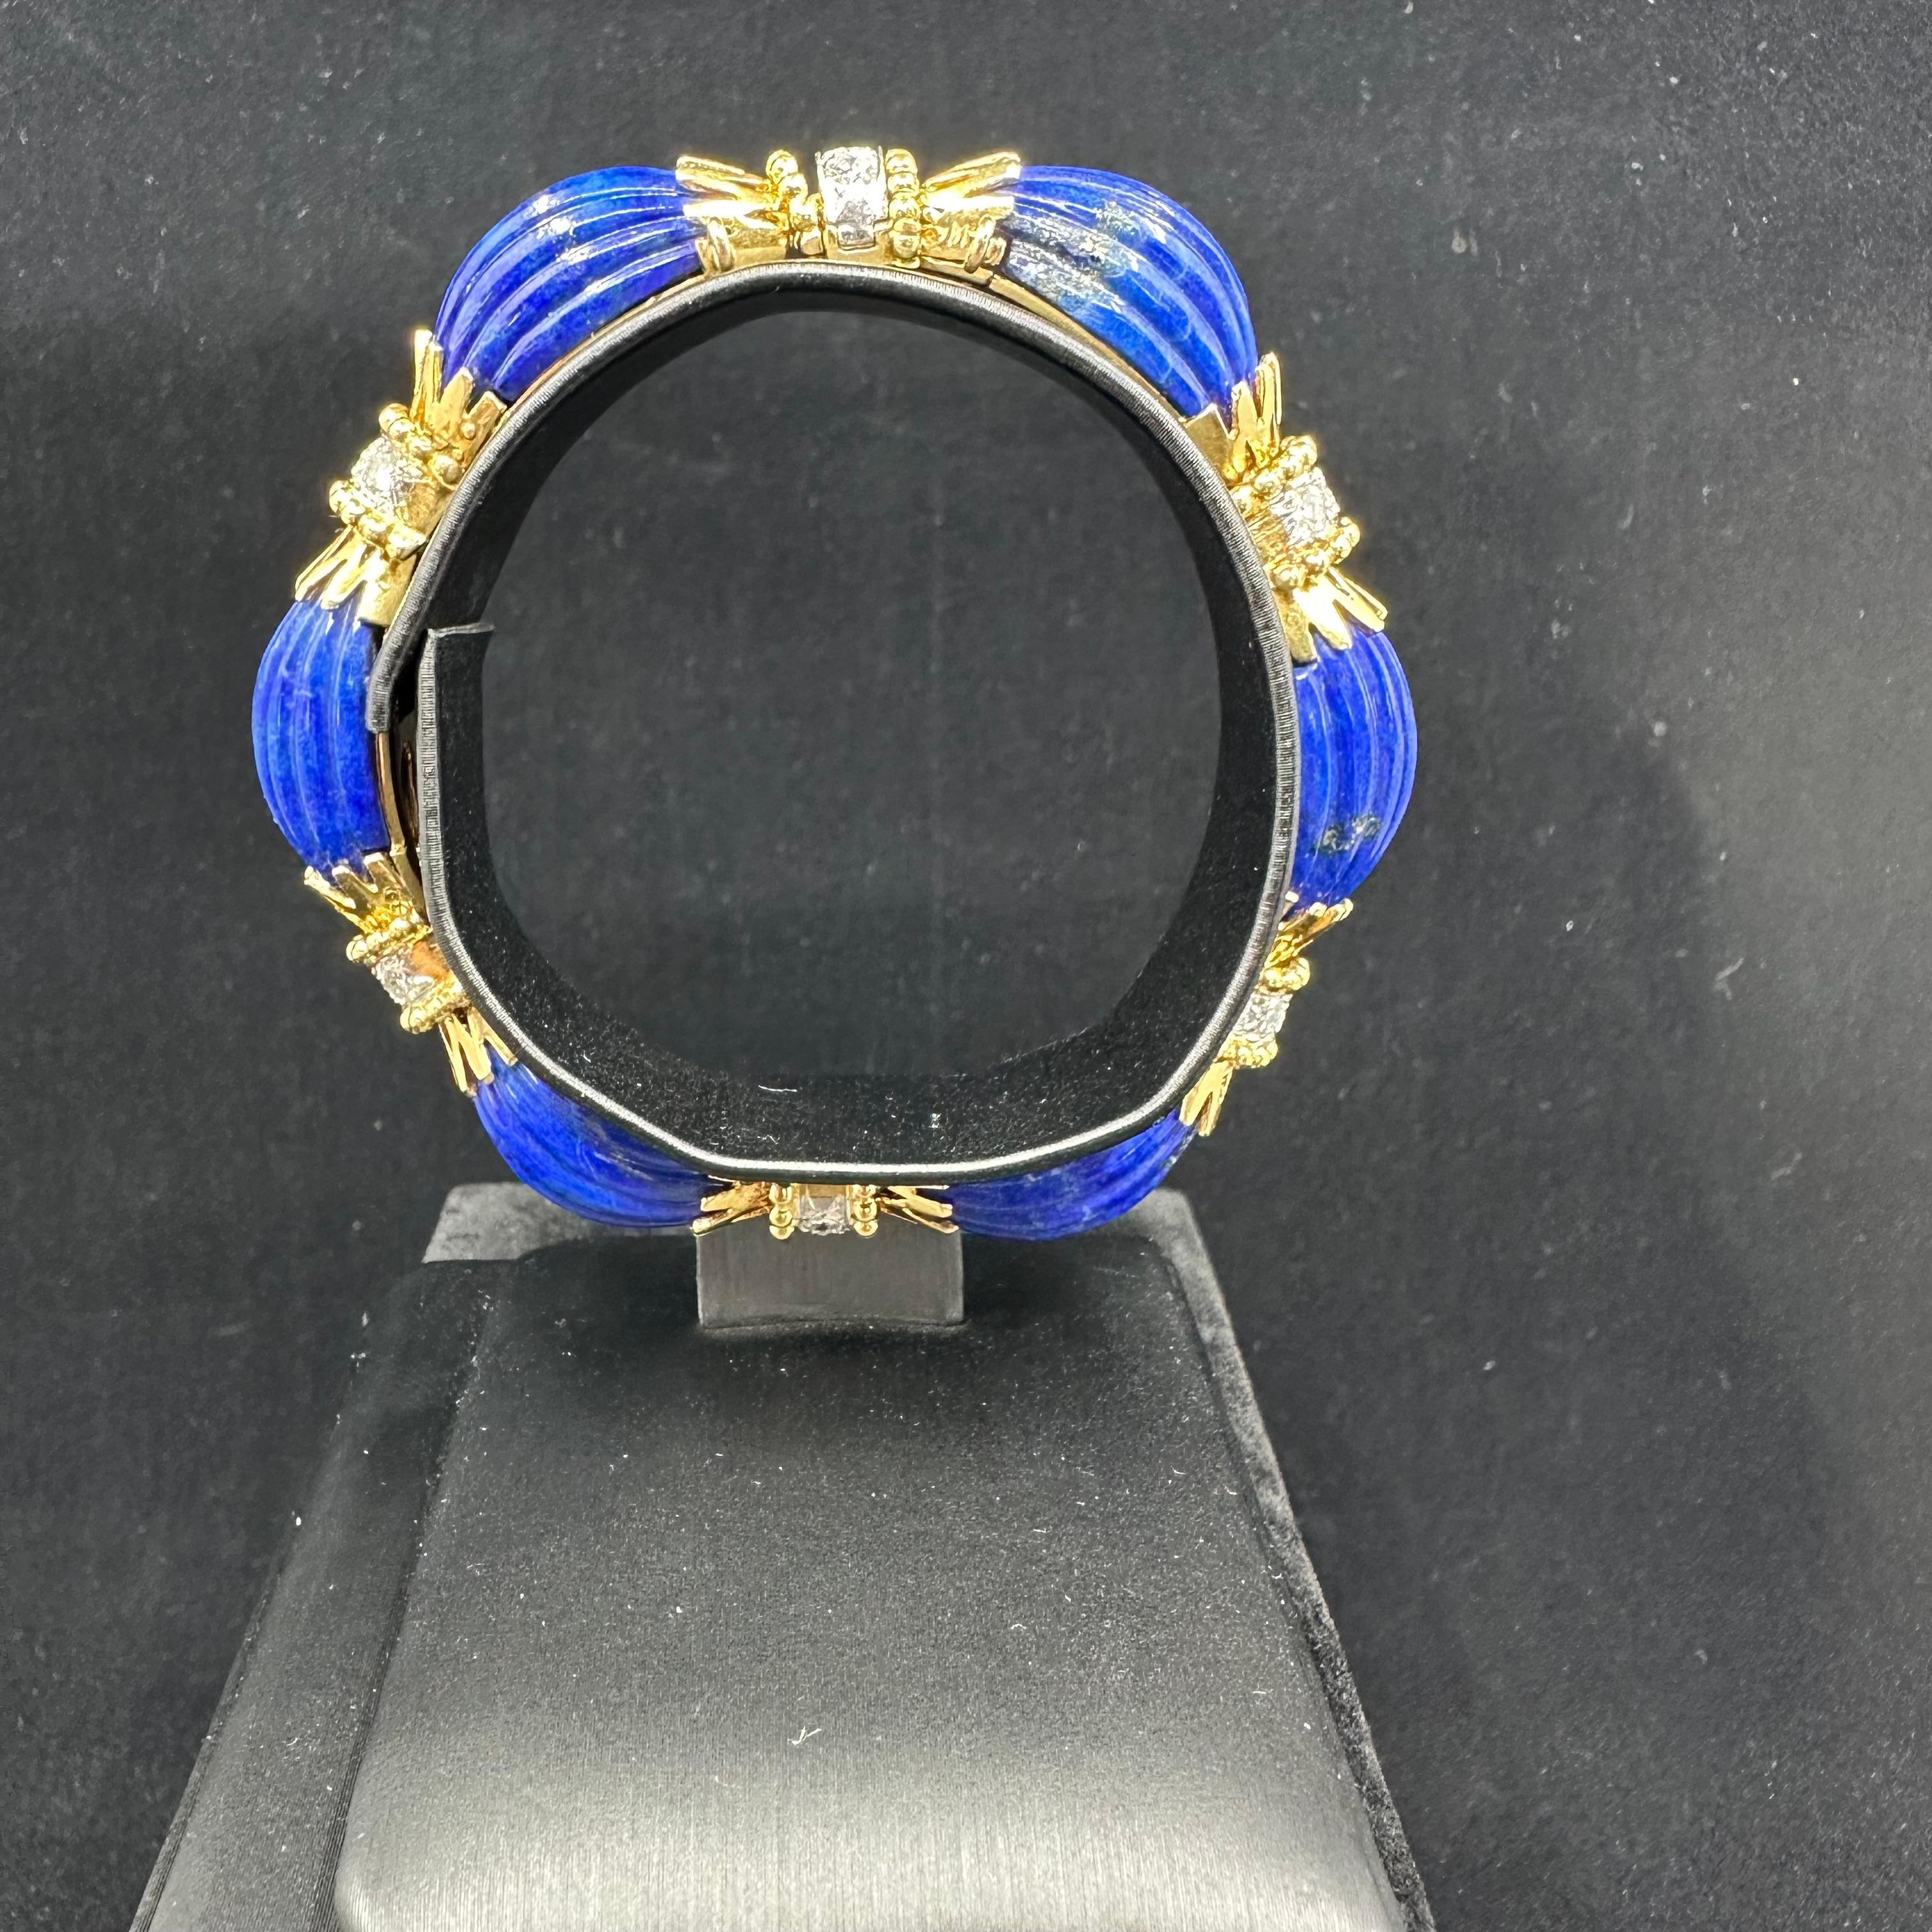 VCA 1970  Bracelet en lapis bleu et diamants, six sections articulées de lapis-lazuli sculpté et cannelé, plus 3 diamants entre chaque section.
Total de 1,90 cts de diamants blancs fins,
Poinçon français numéros vca et agrafes de l'atelier